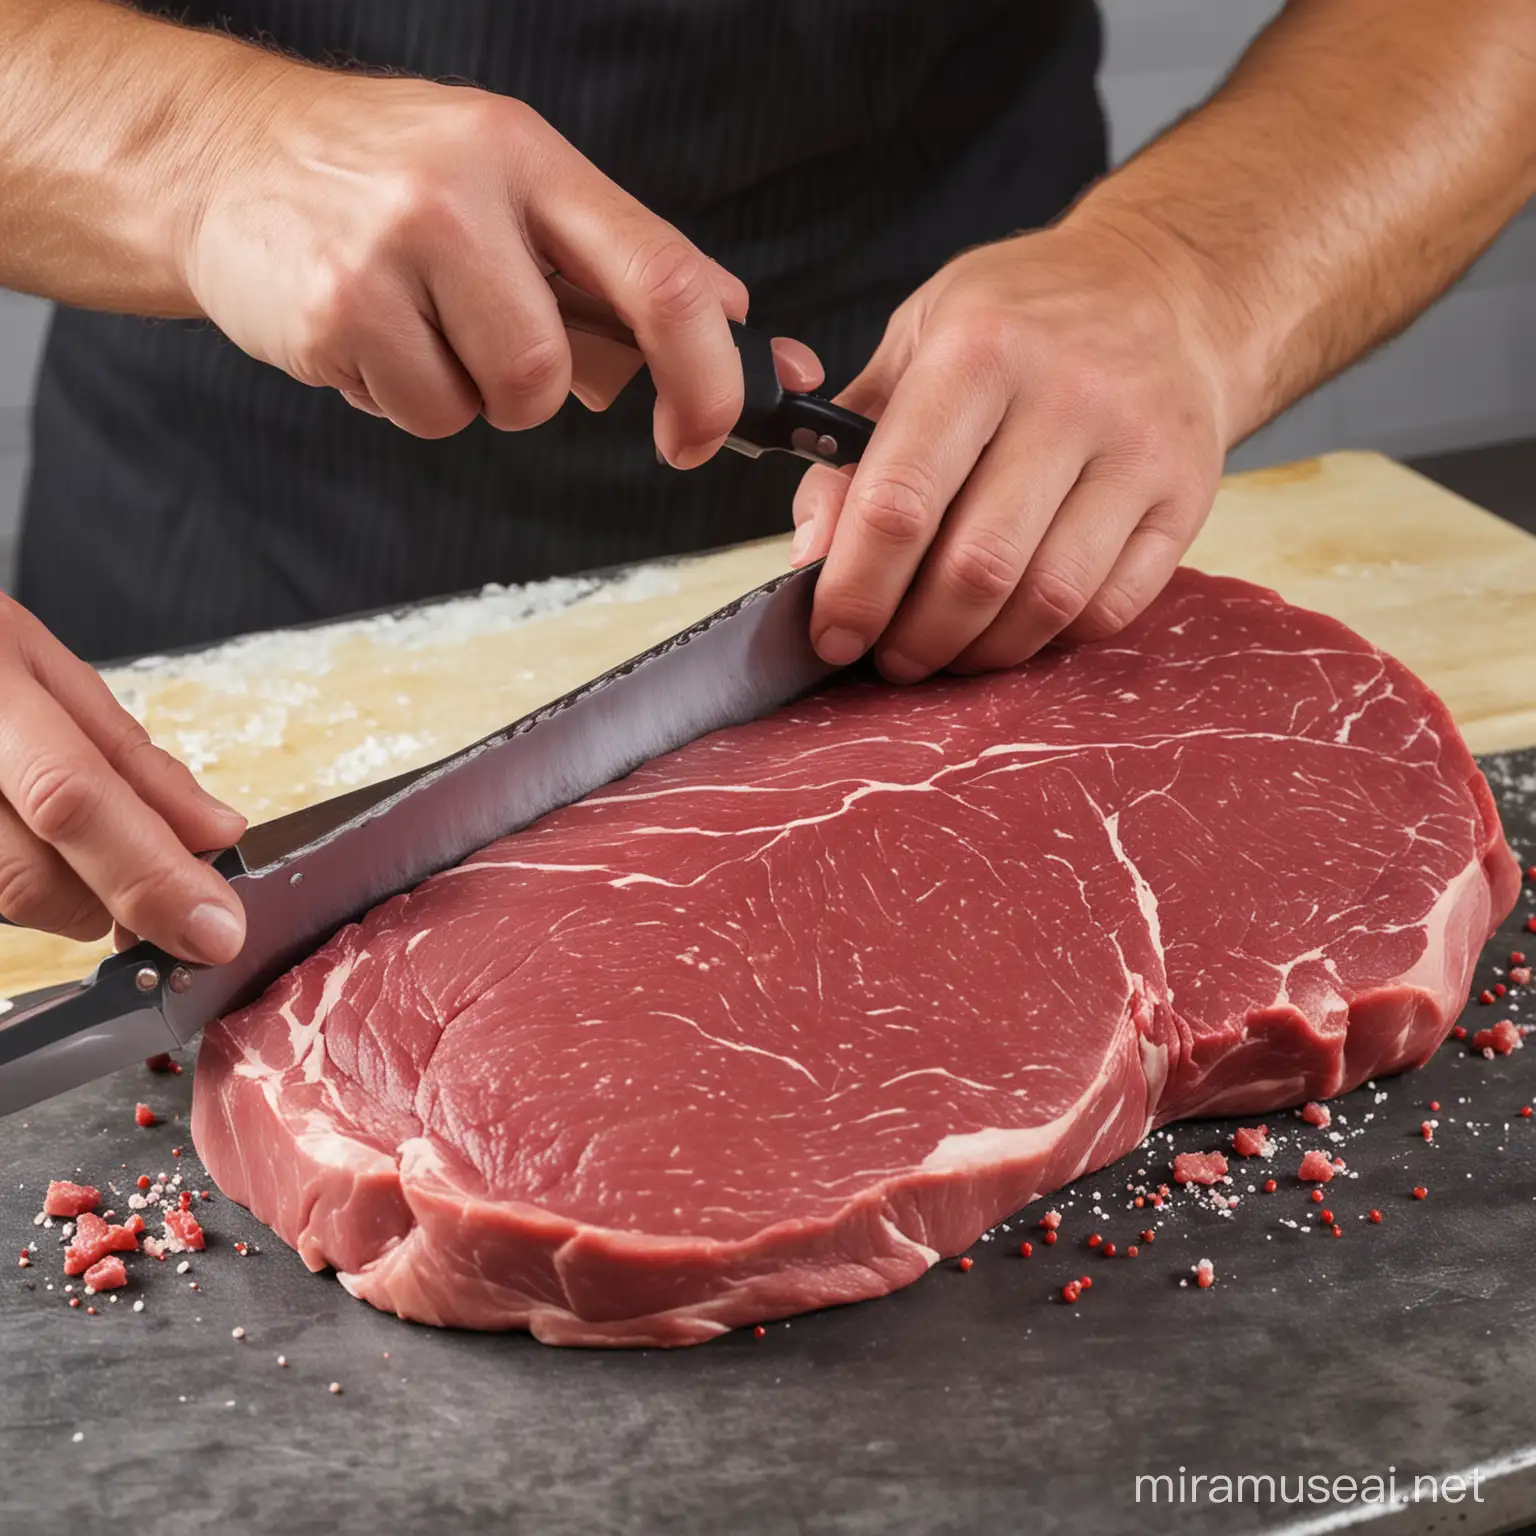 Skilled Butcher Cutting Fresh Raw Meat